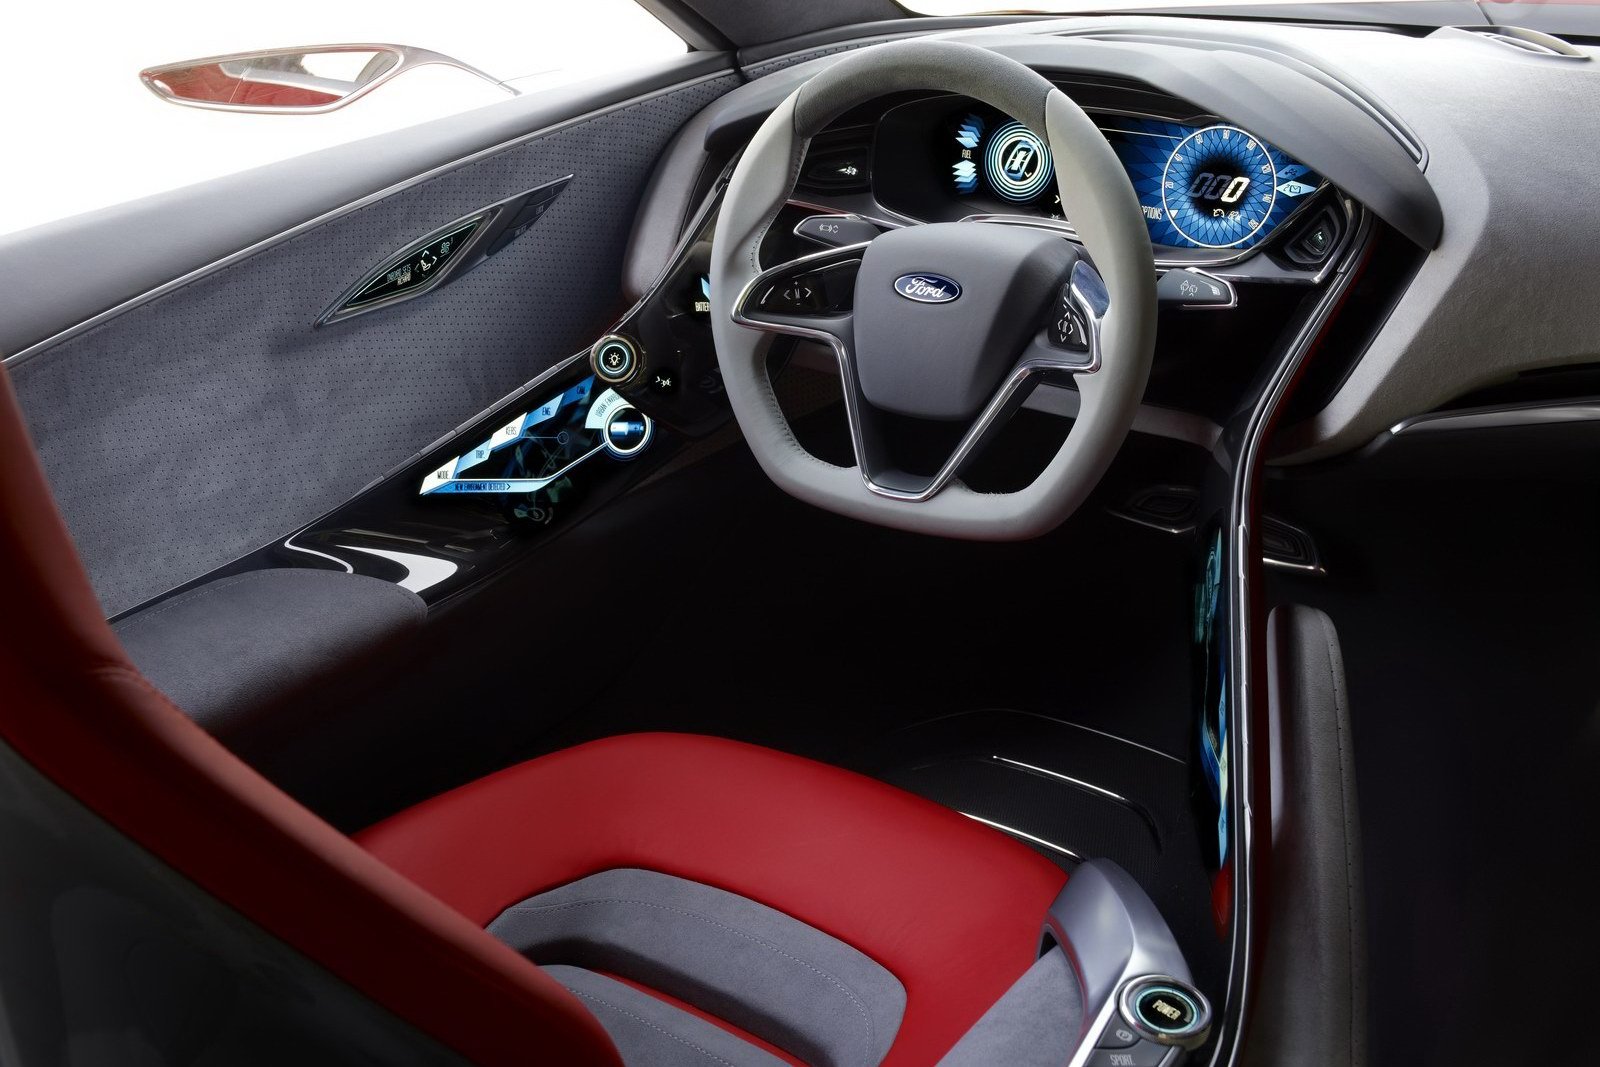 Interiorul lui Ford Evos beneficiaza de multe sisteme de asistenta inteligenta a soferului